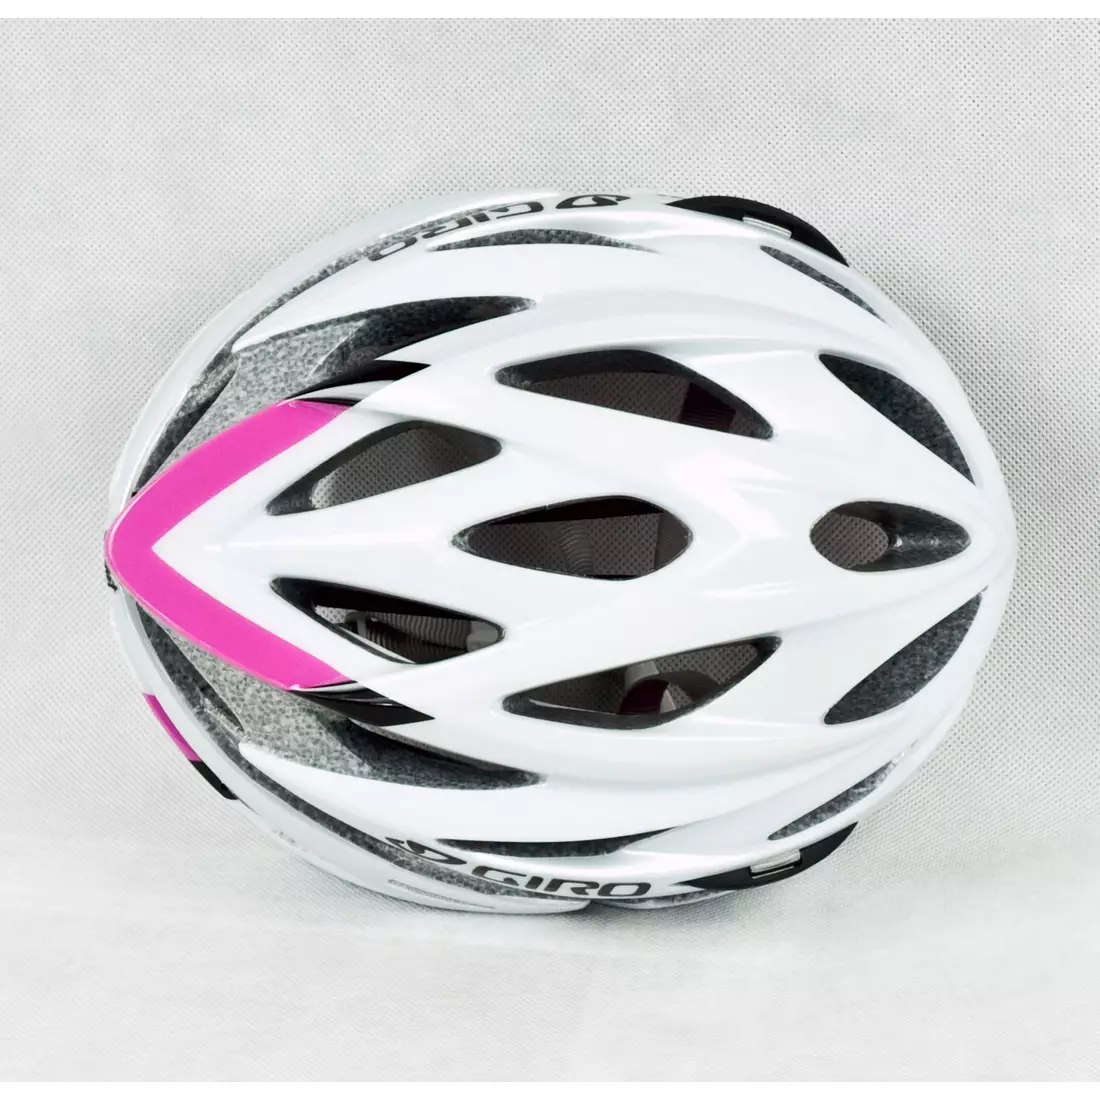 GIRO SONNET női kerékpáros sisak, fehér és rózsaszín